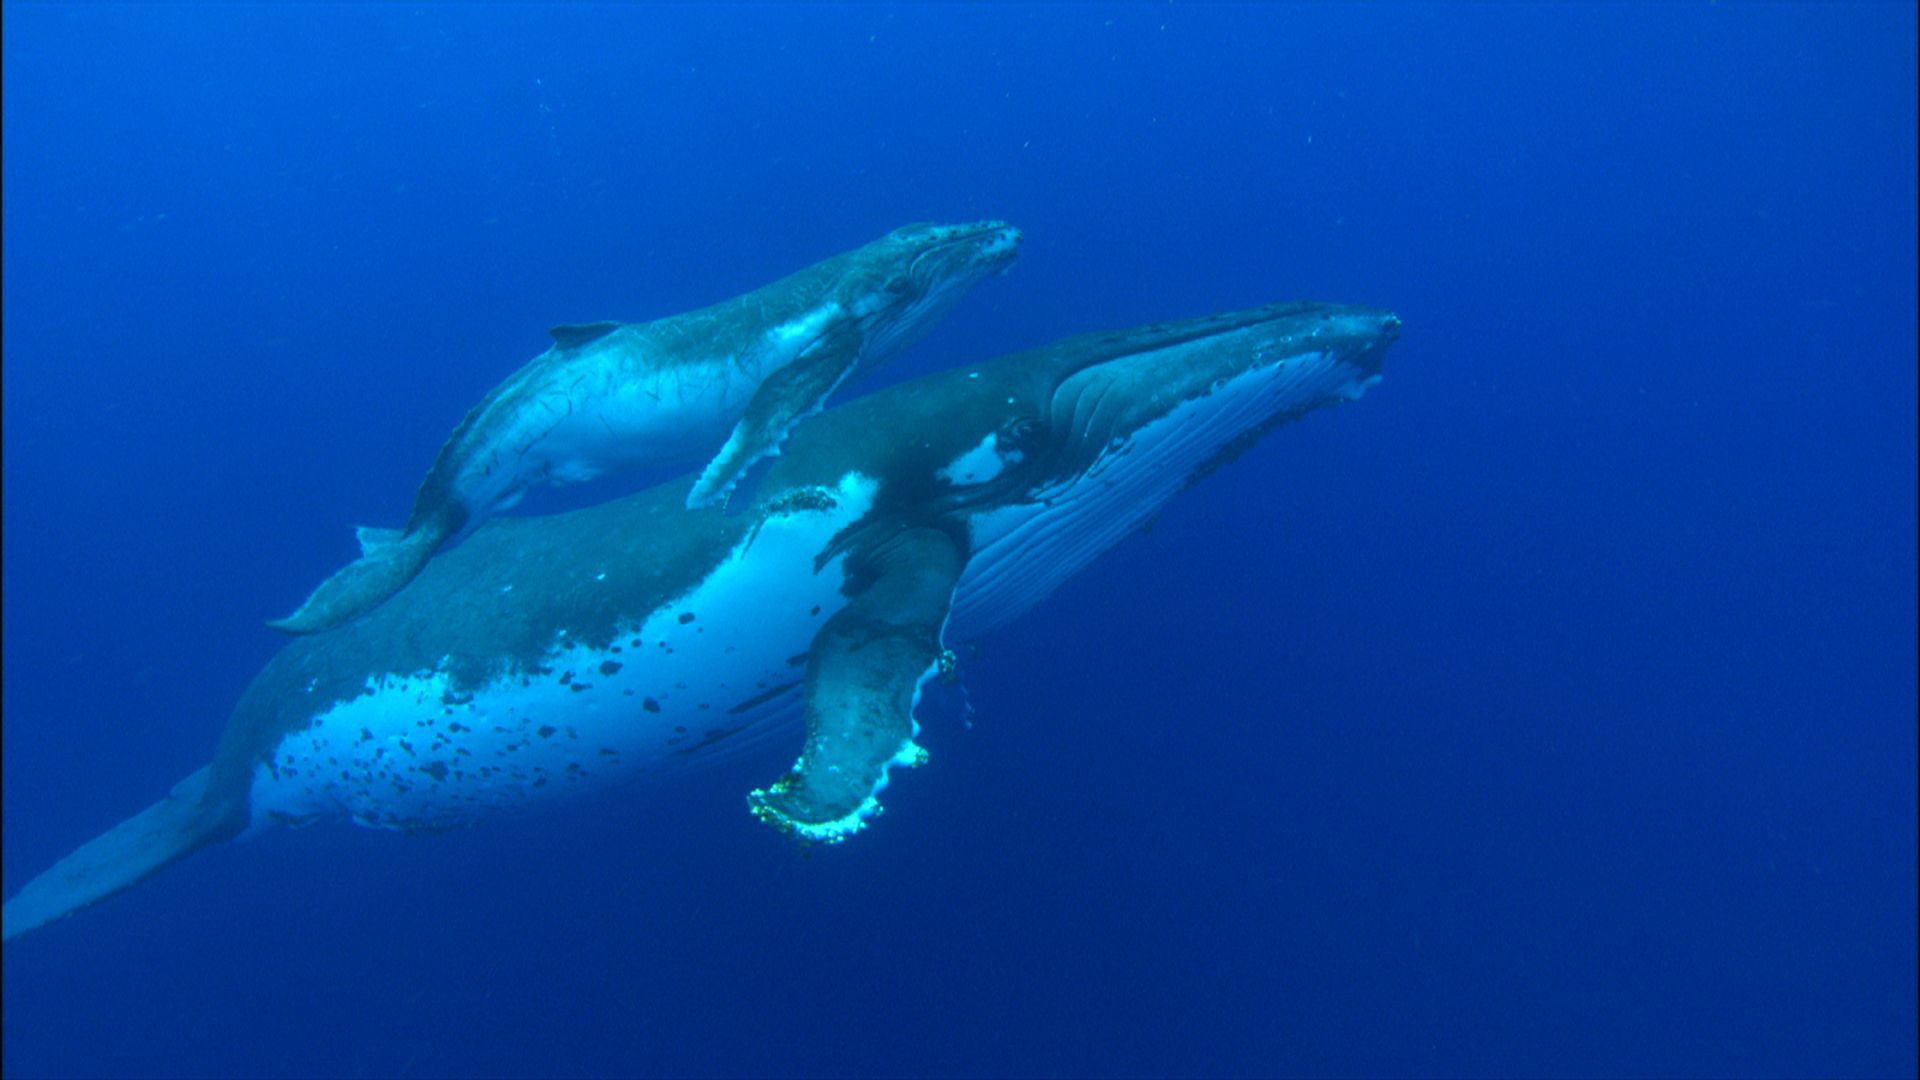 ballena azul fondos de pantalla hd,mamífero marino,biología marina,azul,delfín,submarino